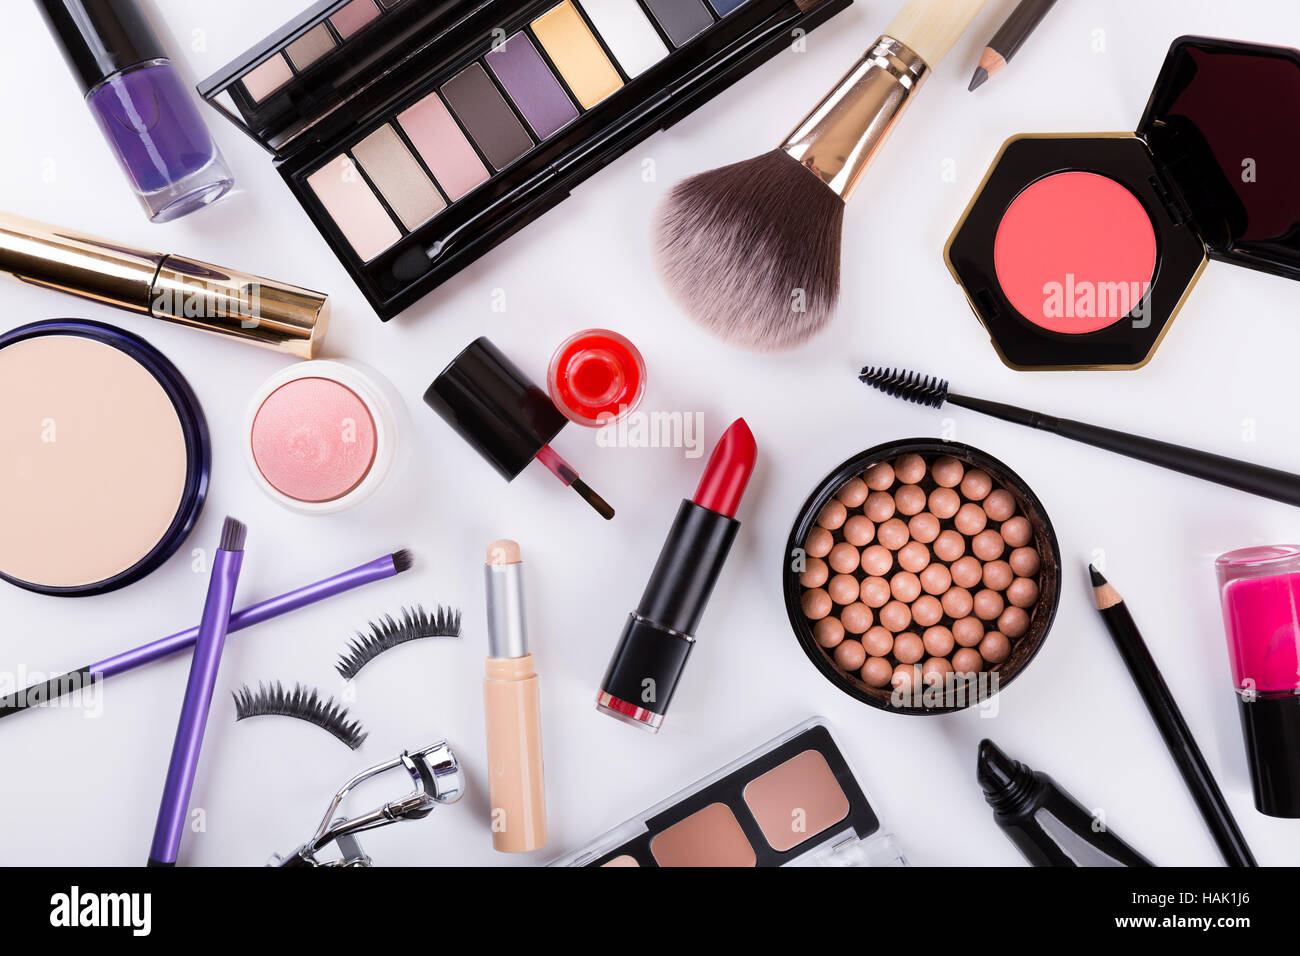 top view of makeup cosmetics set Stock Photo